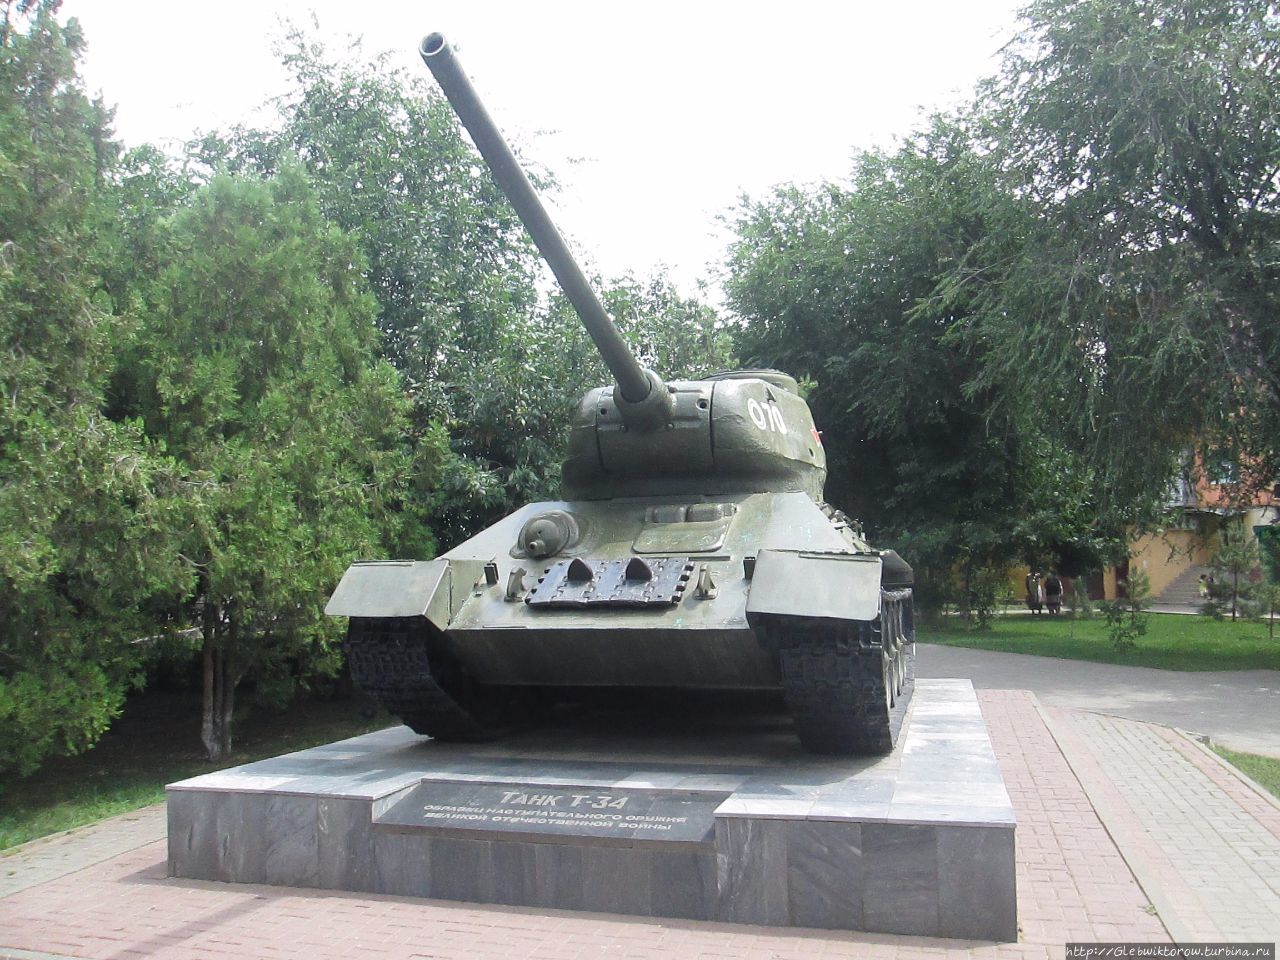 сквер им. 60 лет Сталинградской битвы Астрахань, Россия